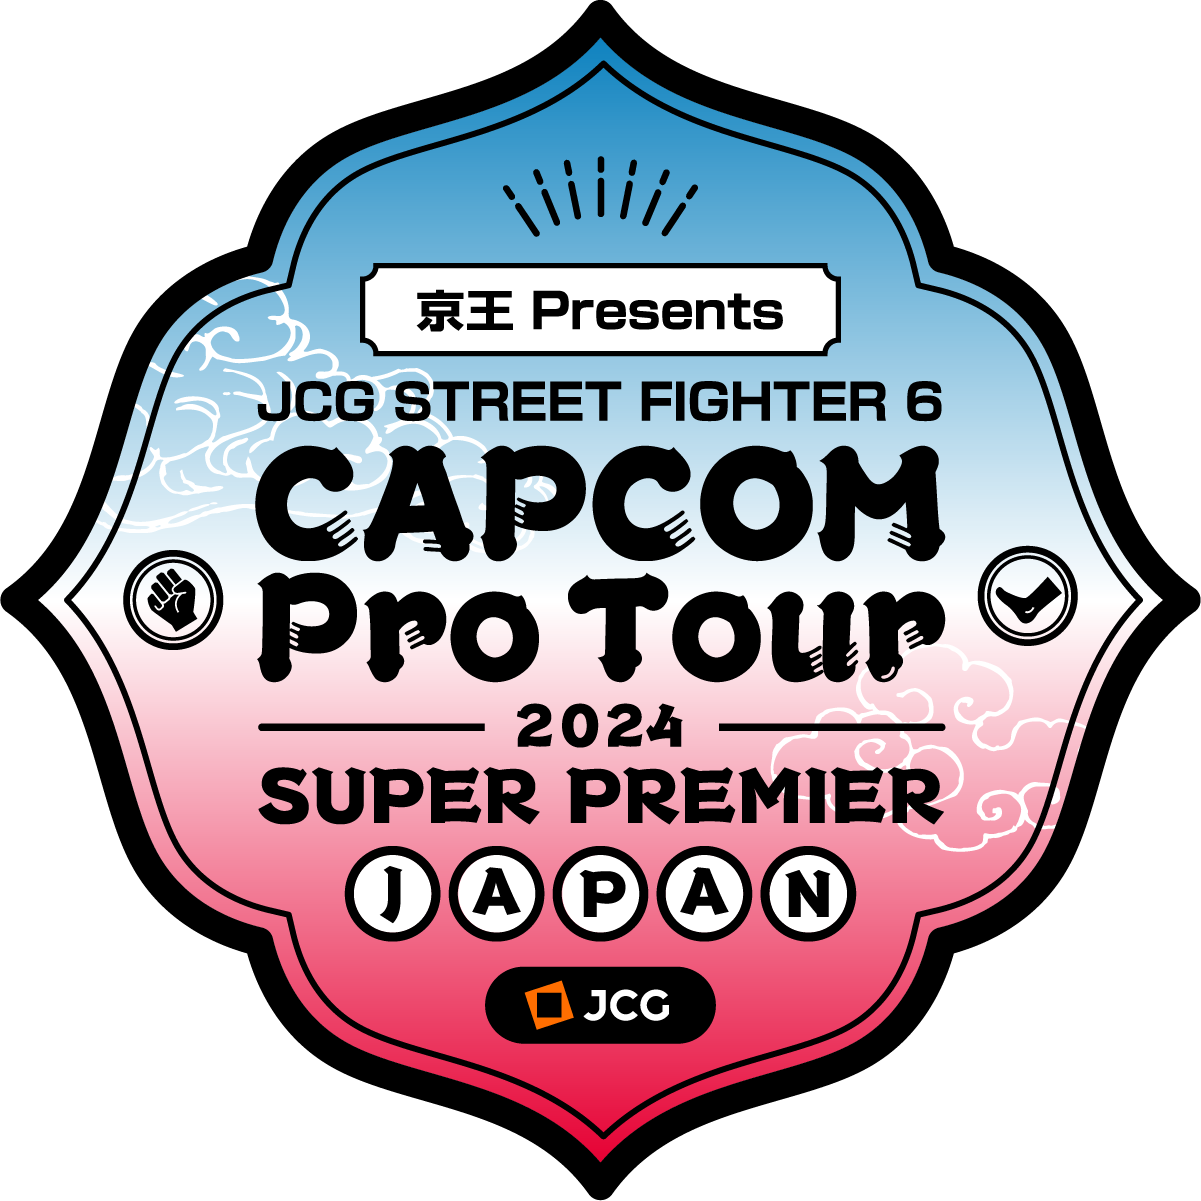 KEIO Corporation Presents JCG STREET FIGHTER 6 CAPCOM Pro Tour 2024 SUPER PREMIER JAPAN